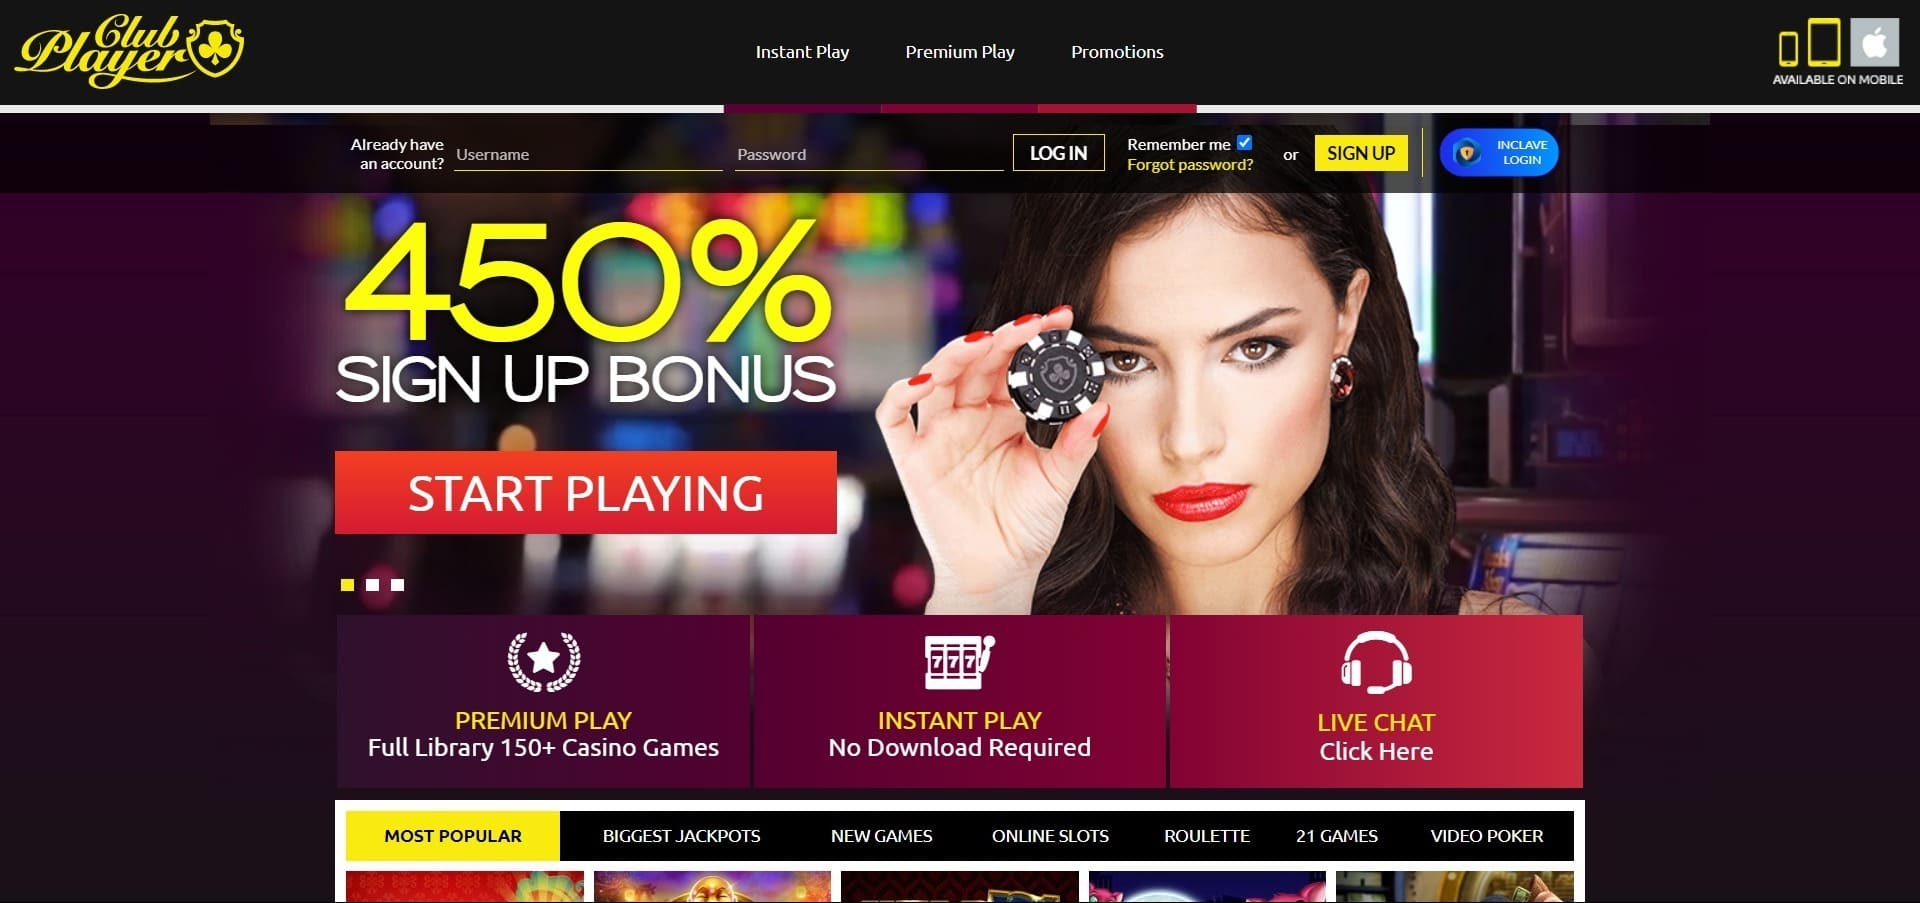 Sitio web oficial de la Club player Casino